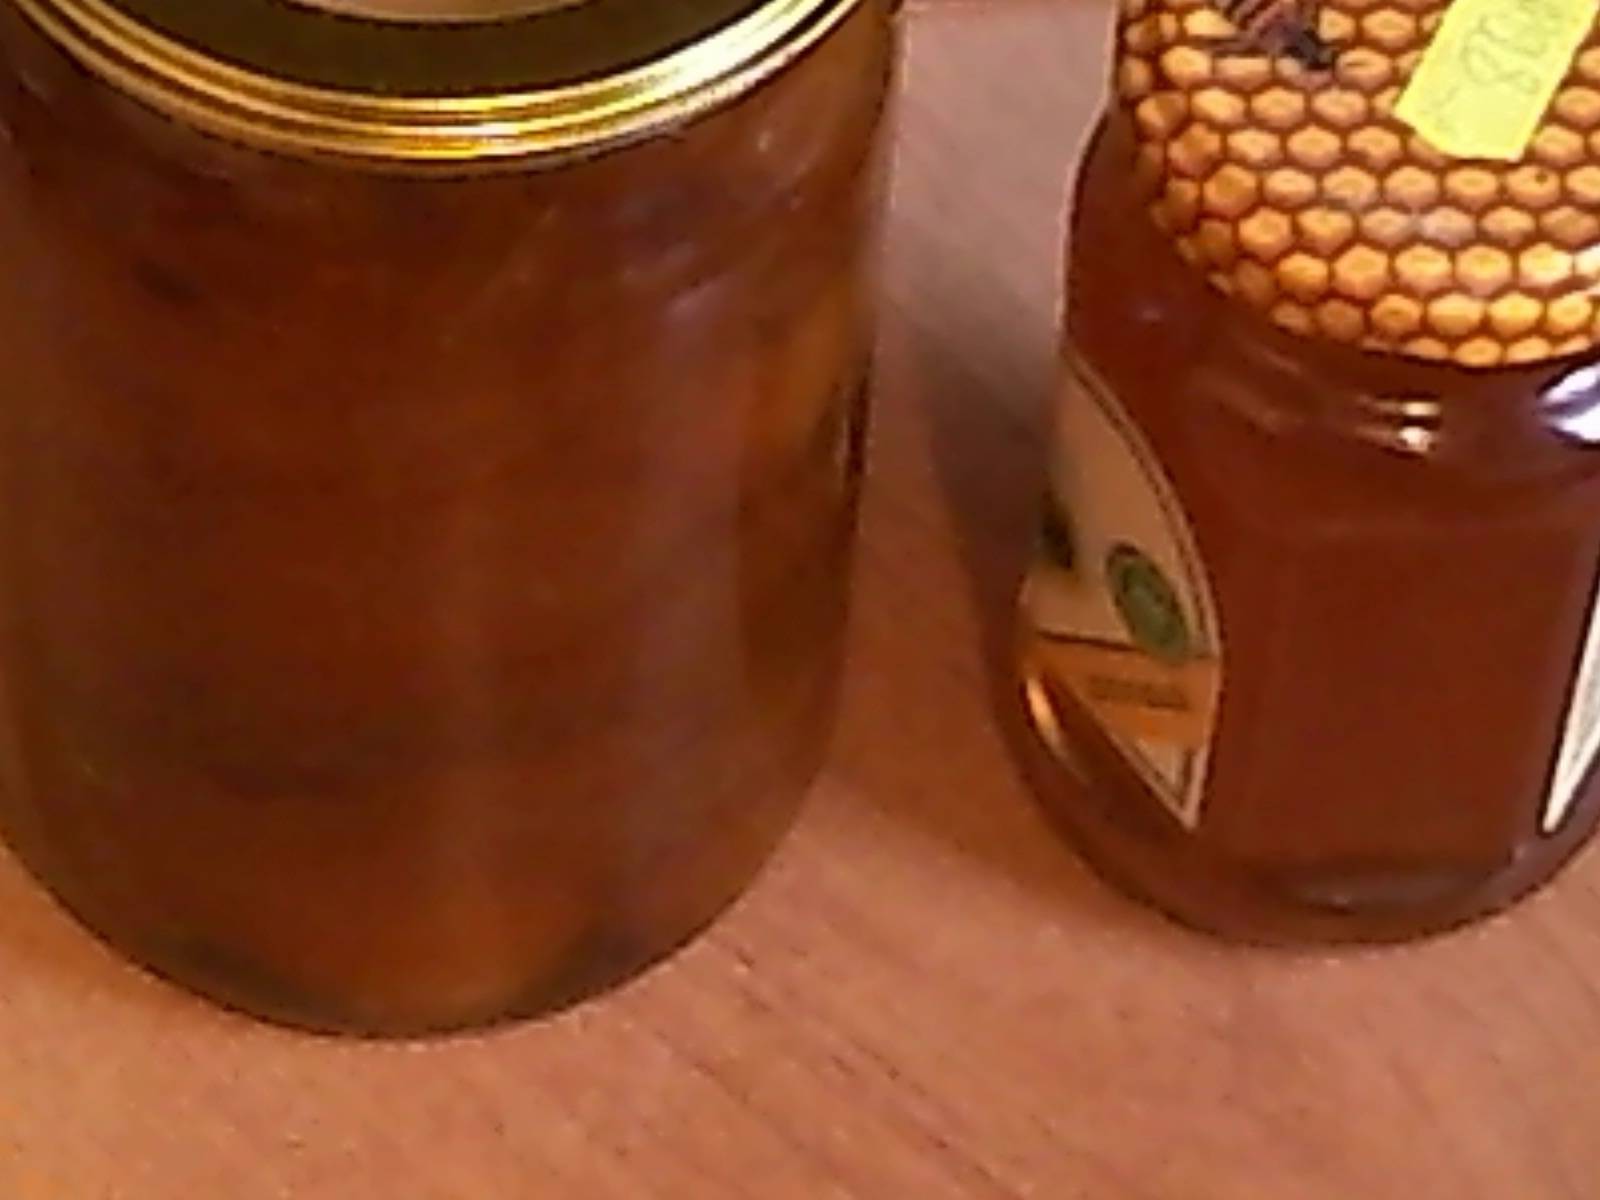 Mermelada (mermelada) de albaricoques en una olla de cocción lenta